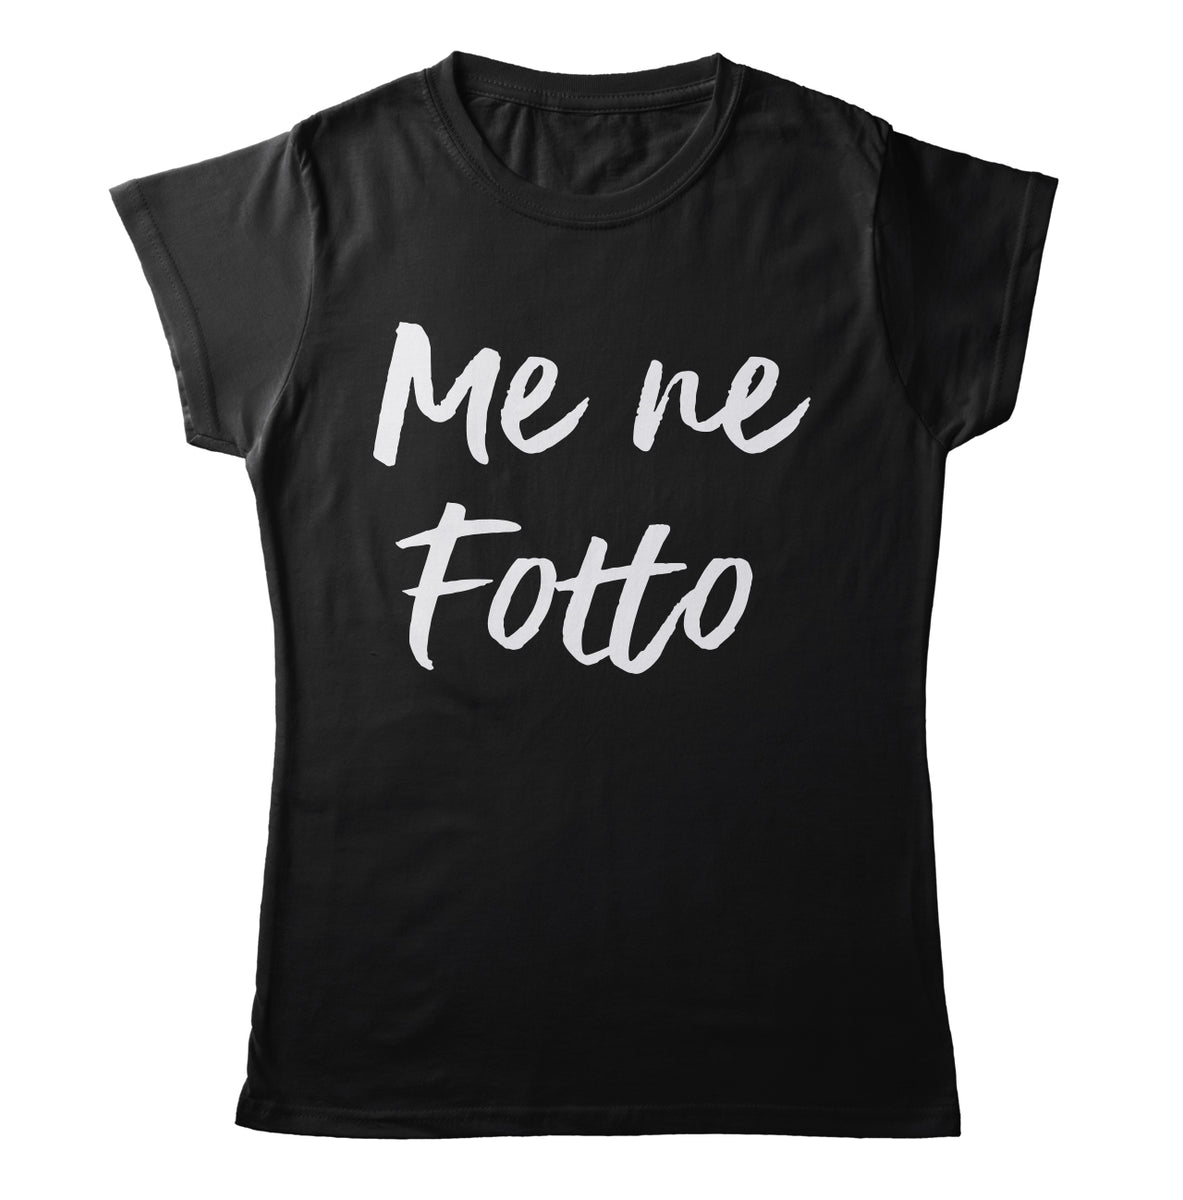 Mett Fußmatte - Fett dank Mett  Fußmatte Fullprint - Shirtee.de / Online  Custom T Shirts Design Maker & T Shirt Druck - Shirtee